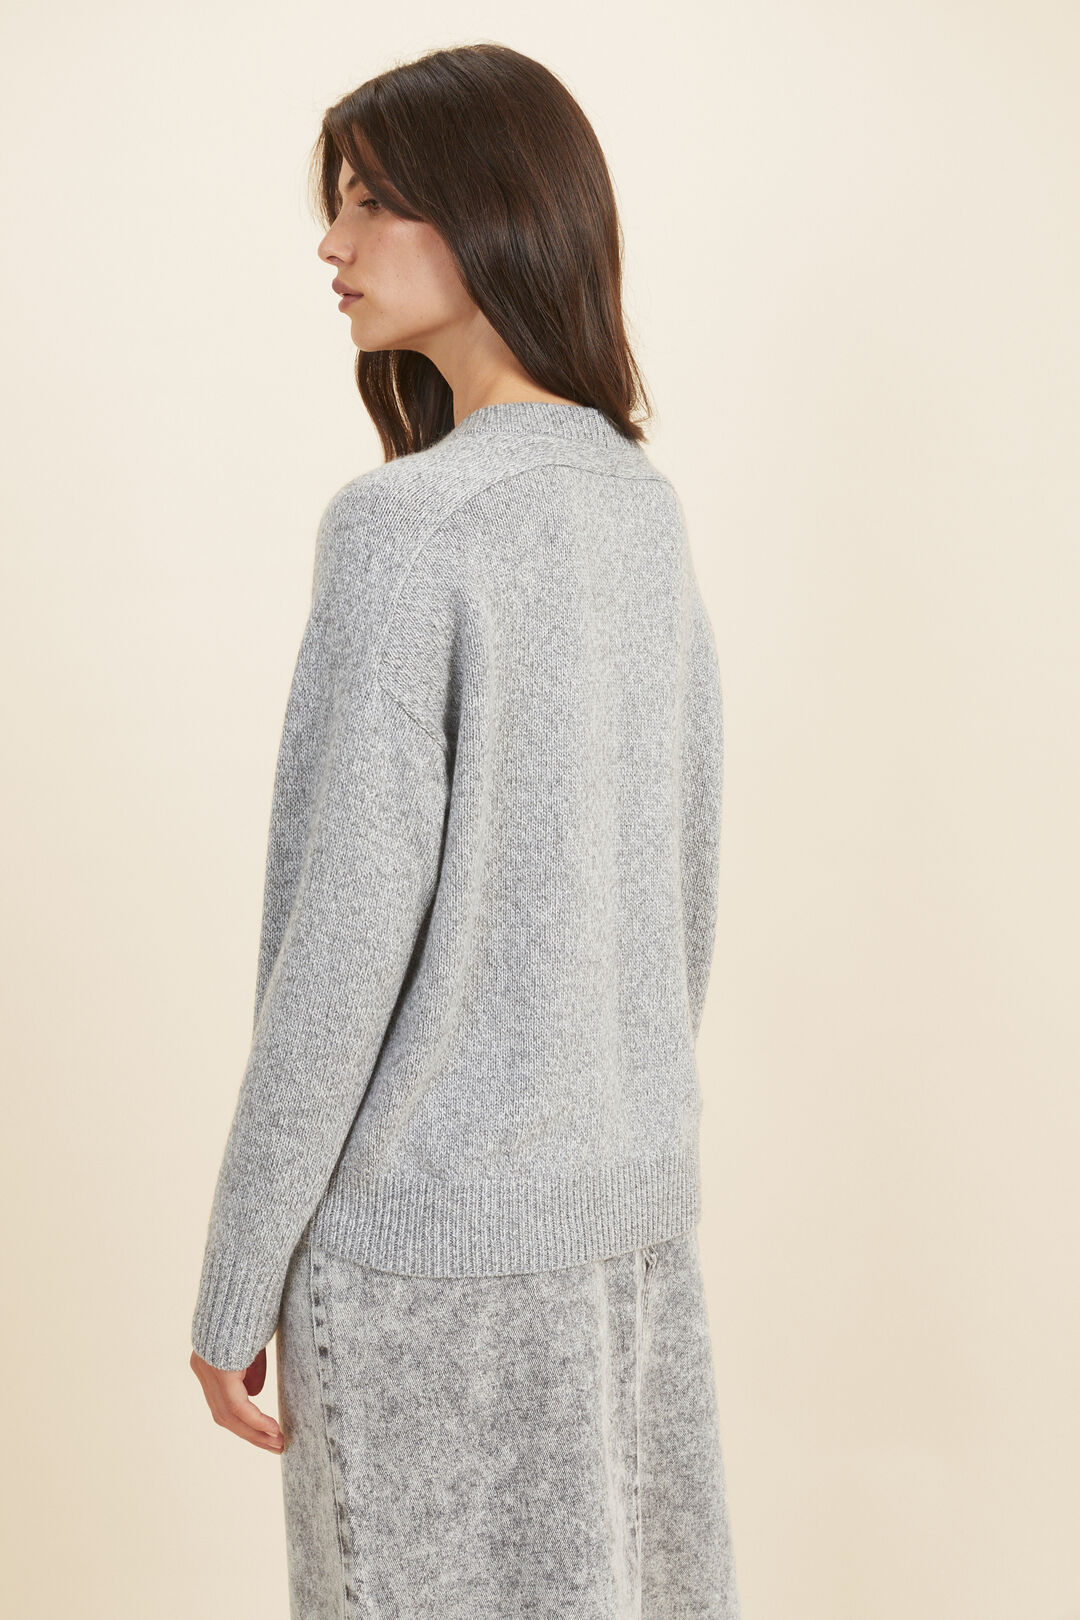 Twist Yarn Relaxed Sweater  Mid Grey Twist  hi-res